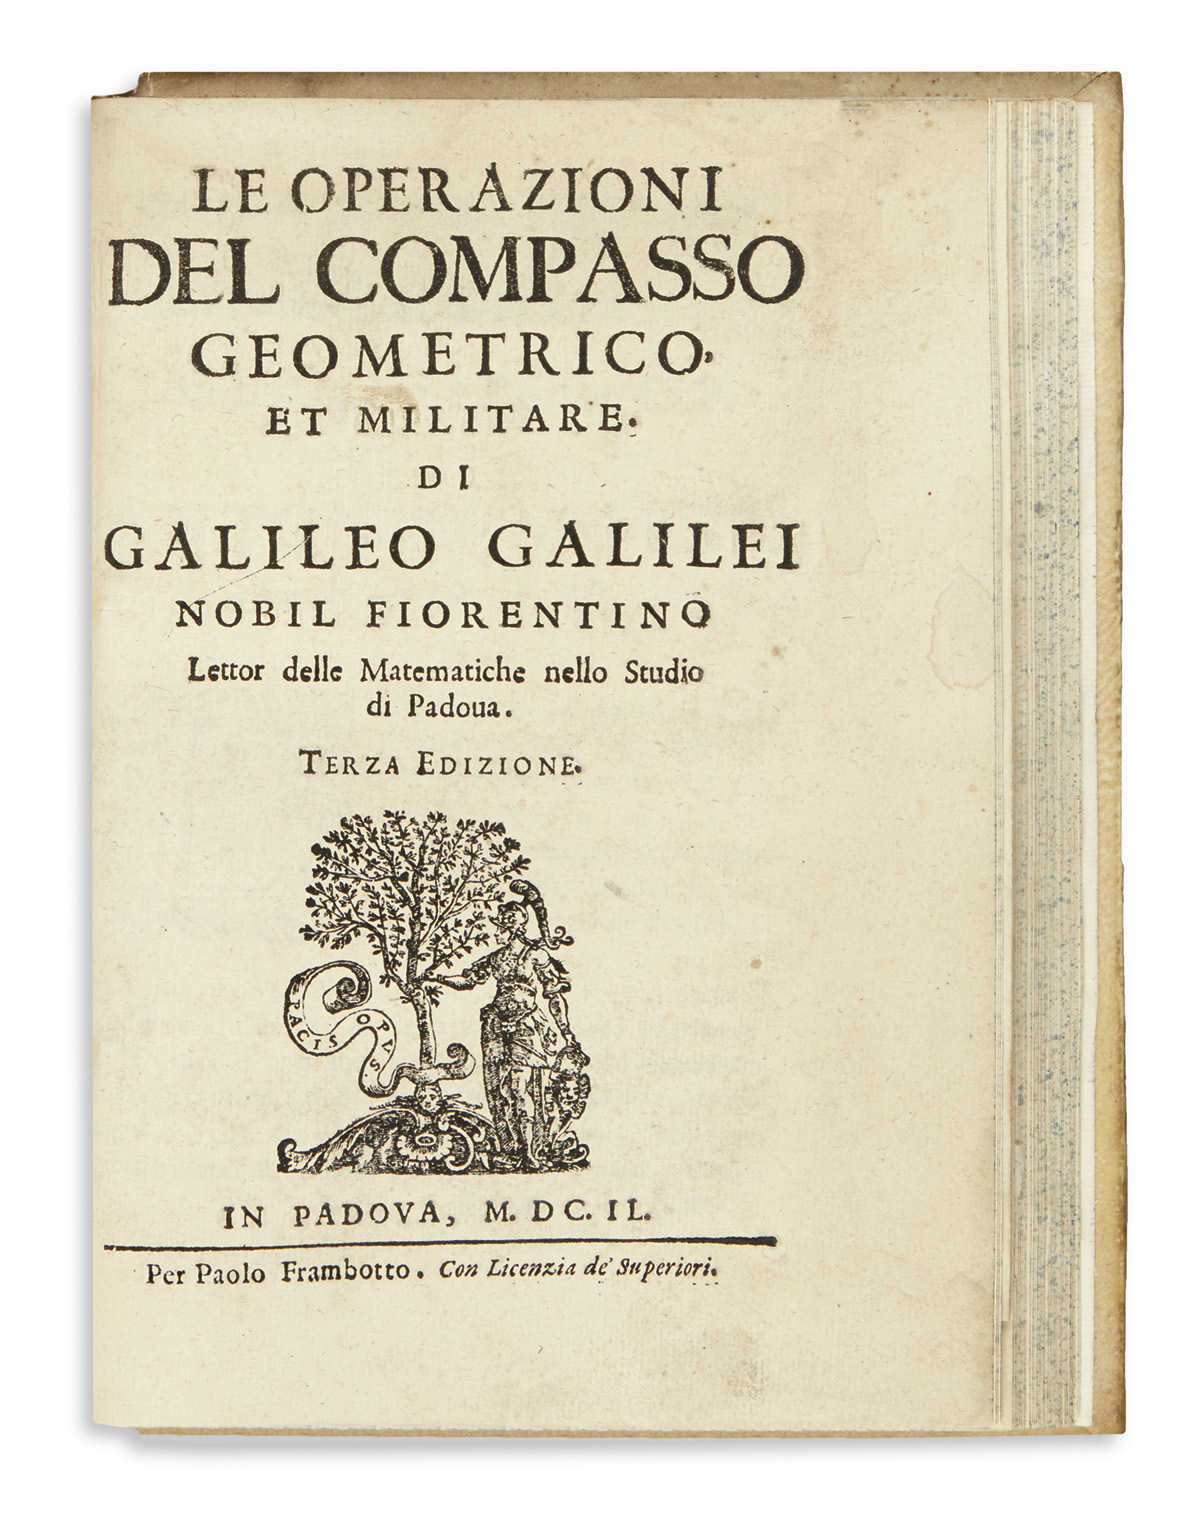 GALILEI, GALILEO. Dialogo . . . sopra i Due Massimi Sistemi del Mondo. 1632. Lacks frontispiece + Le Operazioni del Compasso. 1649